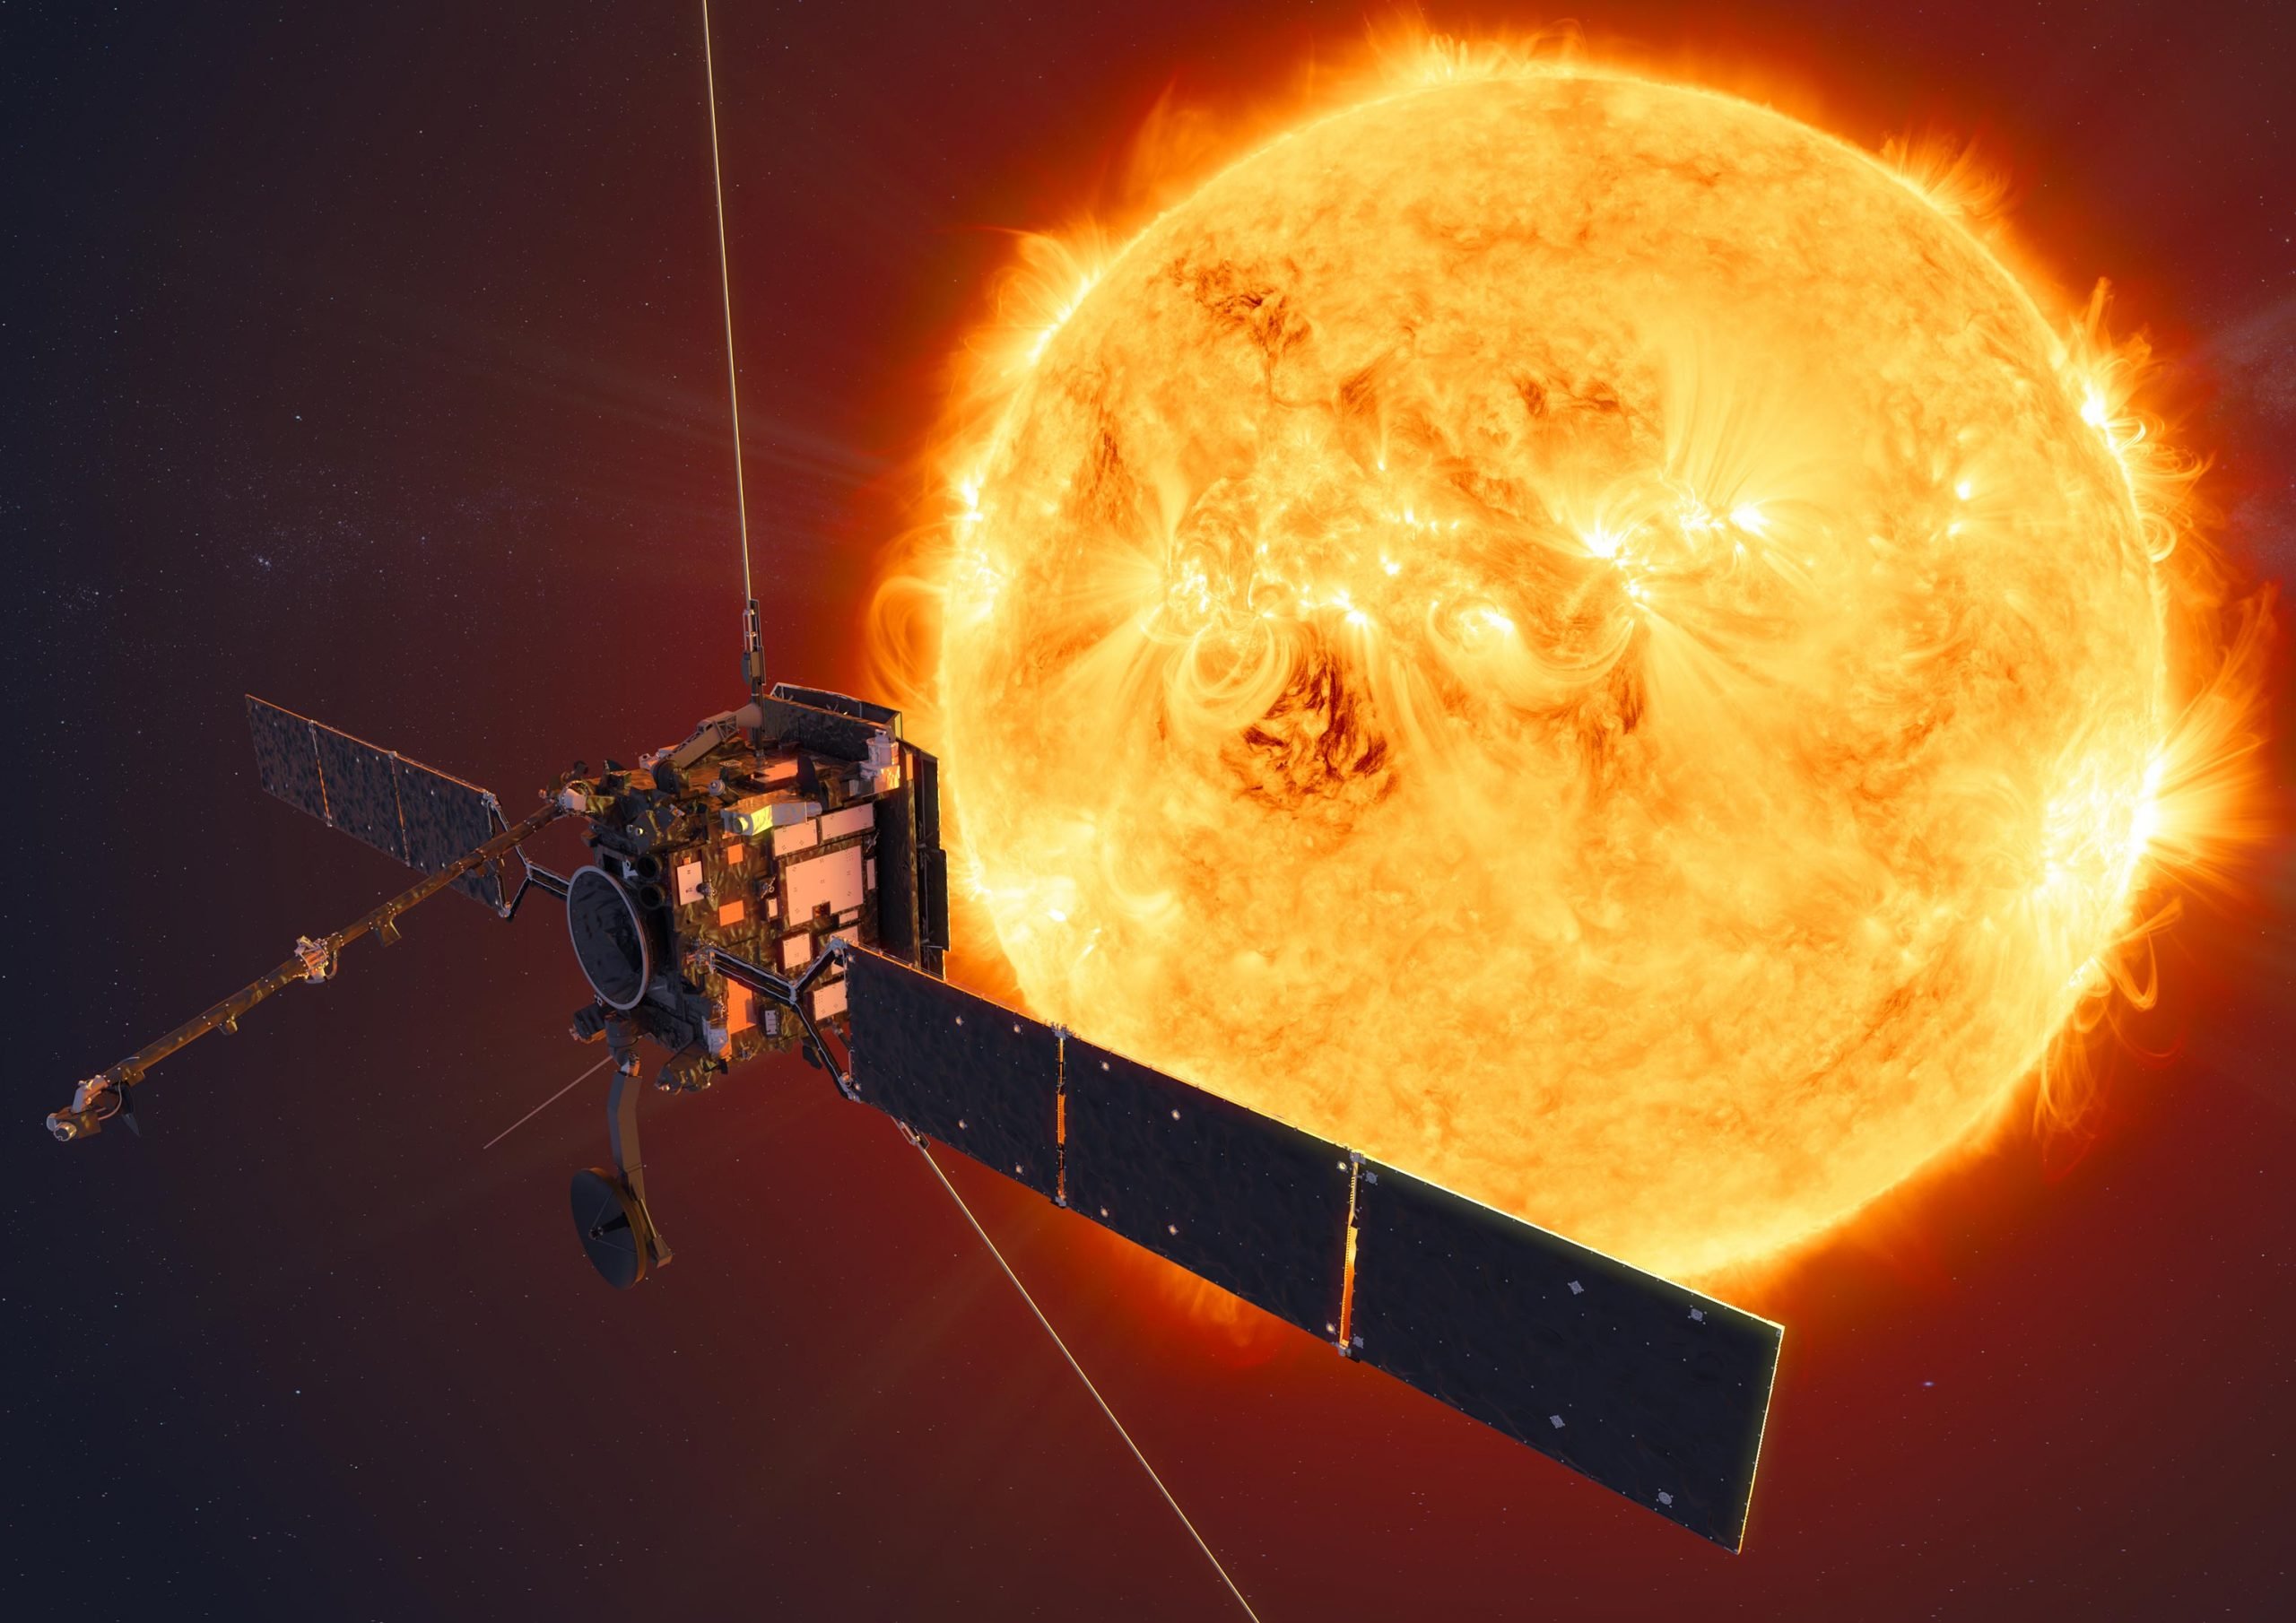 Das umlaufende Solarmodul fängt die zarte Korona der Sonne in atemberaubenden Details ein [Video]